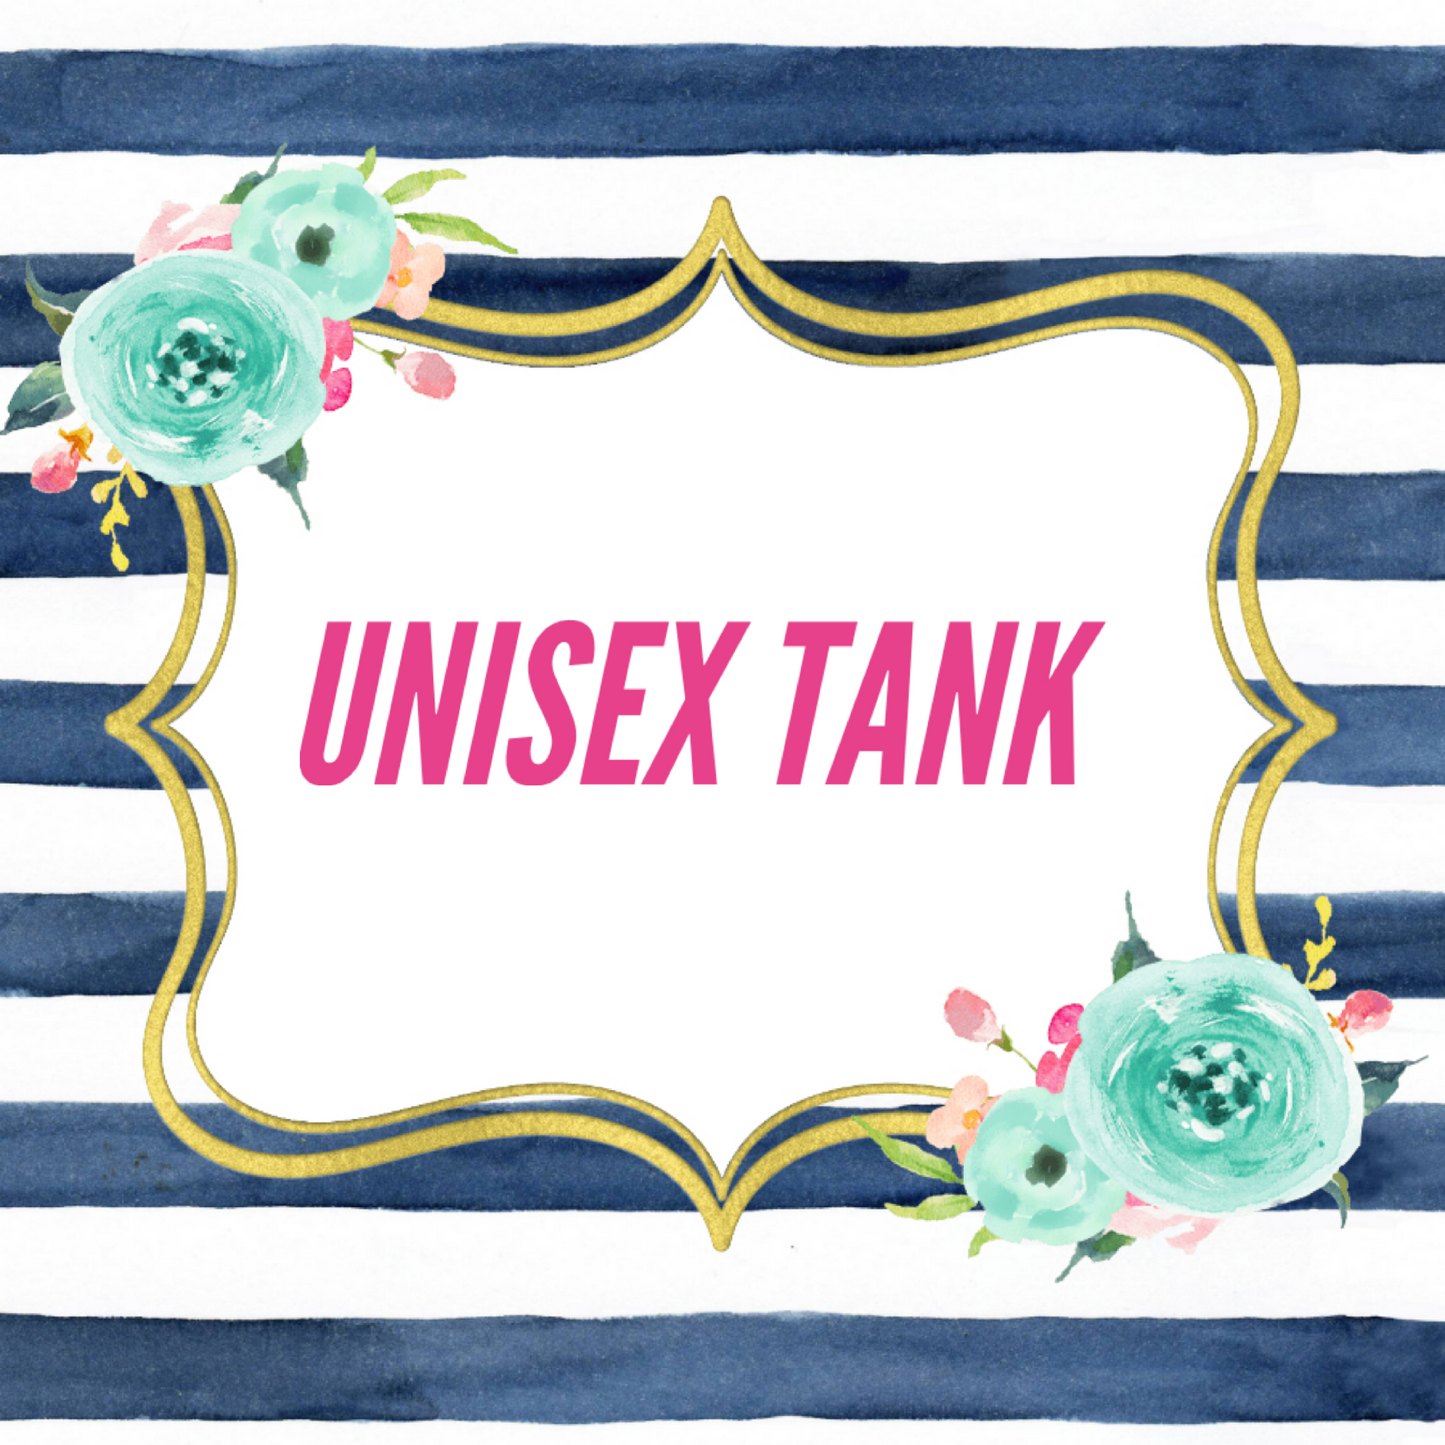 Unisex Tank - $1